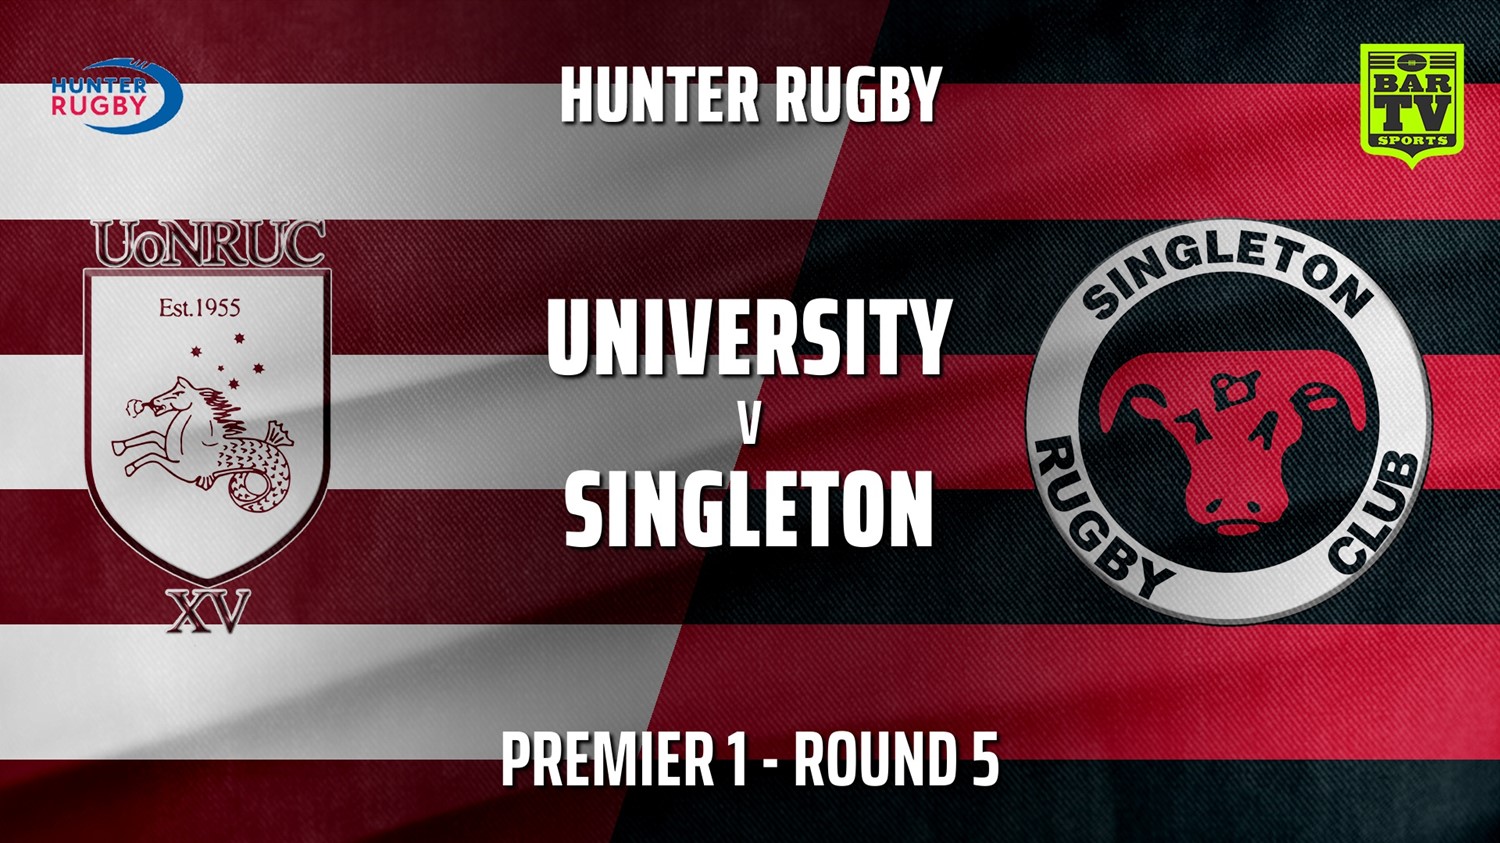 210515-HRU Round 5 - Premier 1 - University Of Newcastle v Singleton Bulls Slate Image